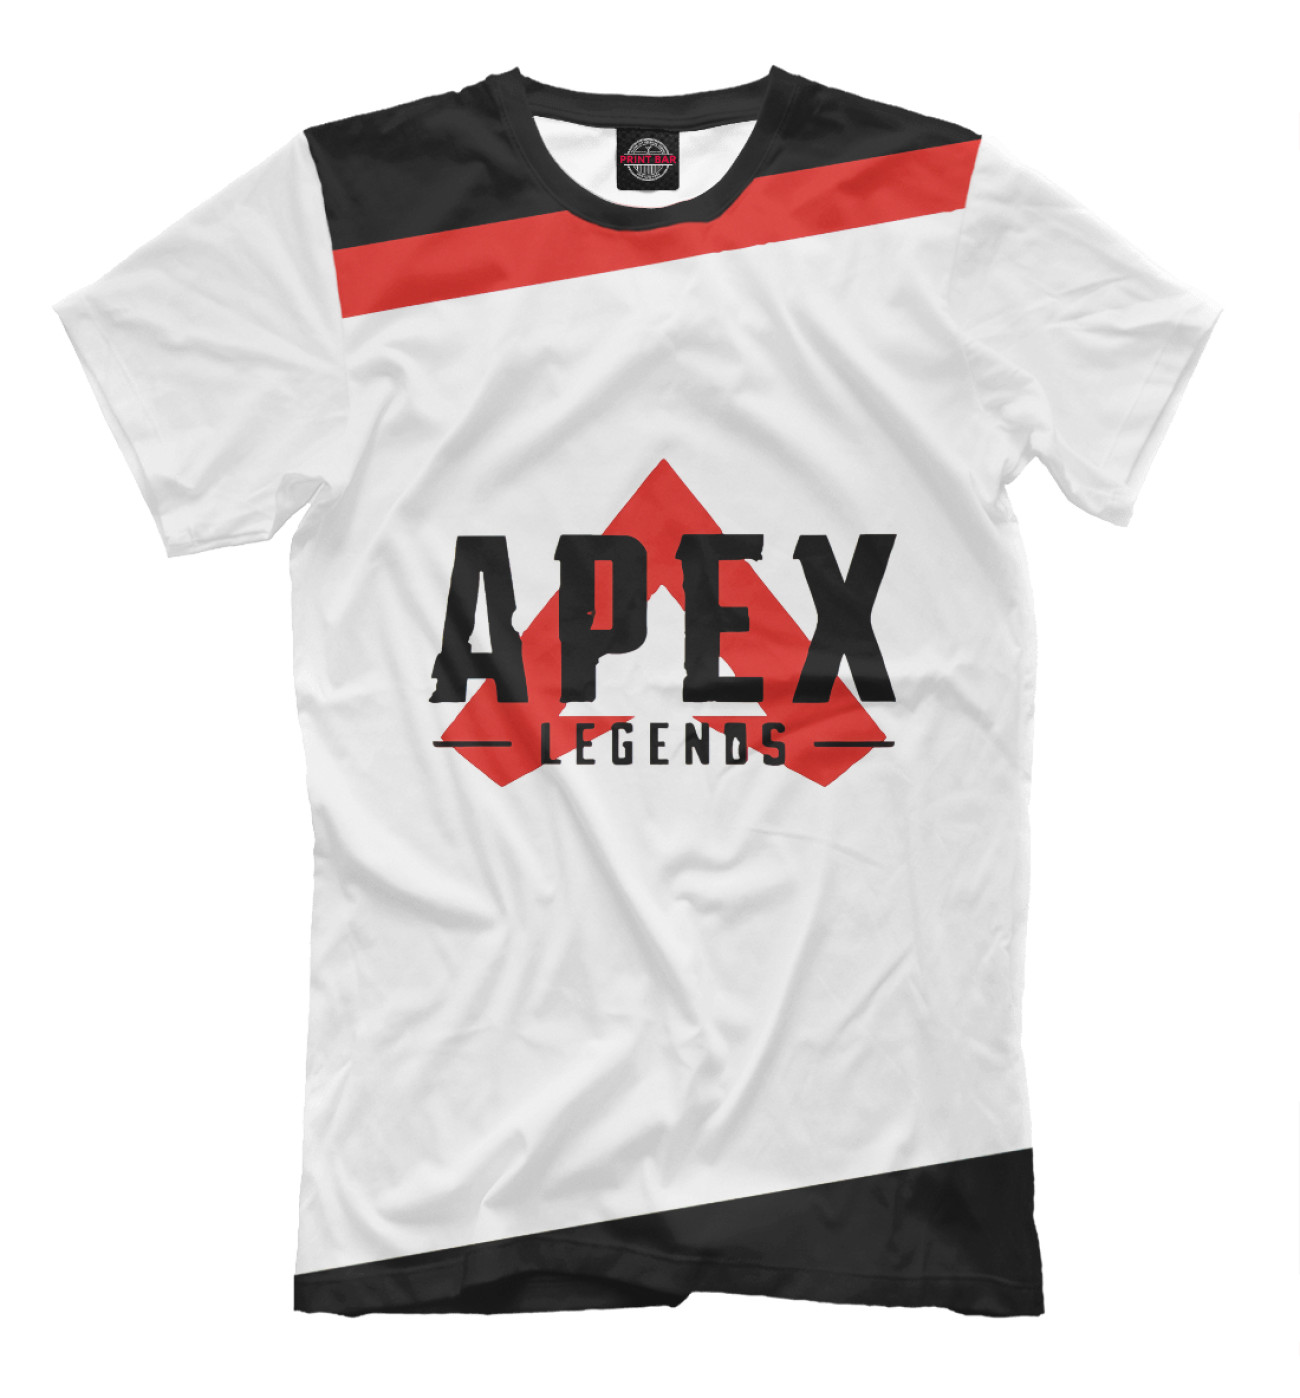 Мужская Футболка Apex Legends, артикул: APX-829161-fut-2